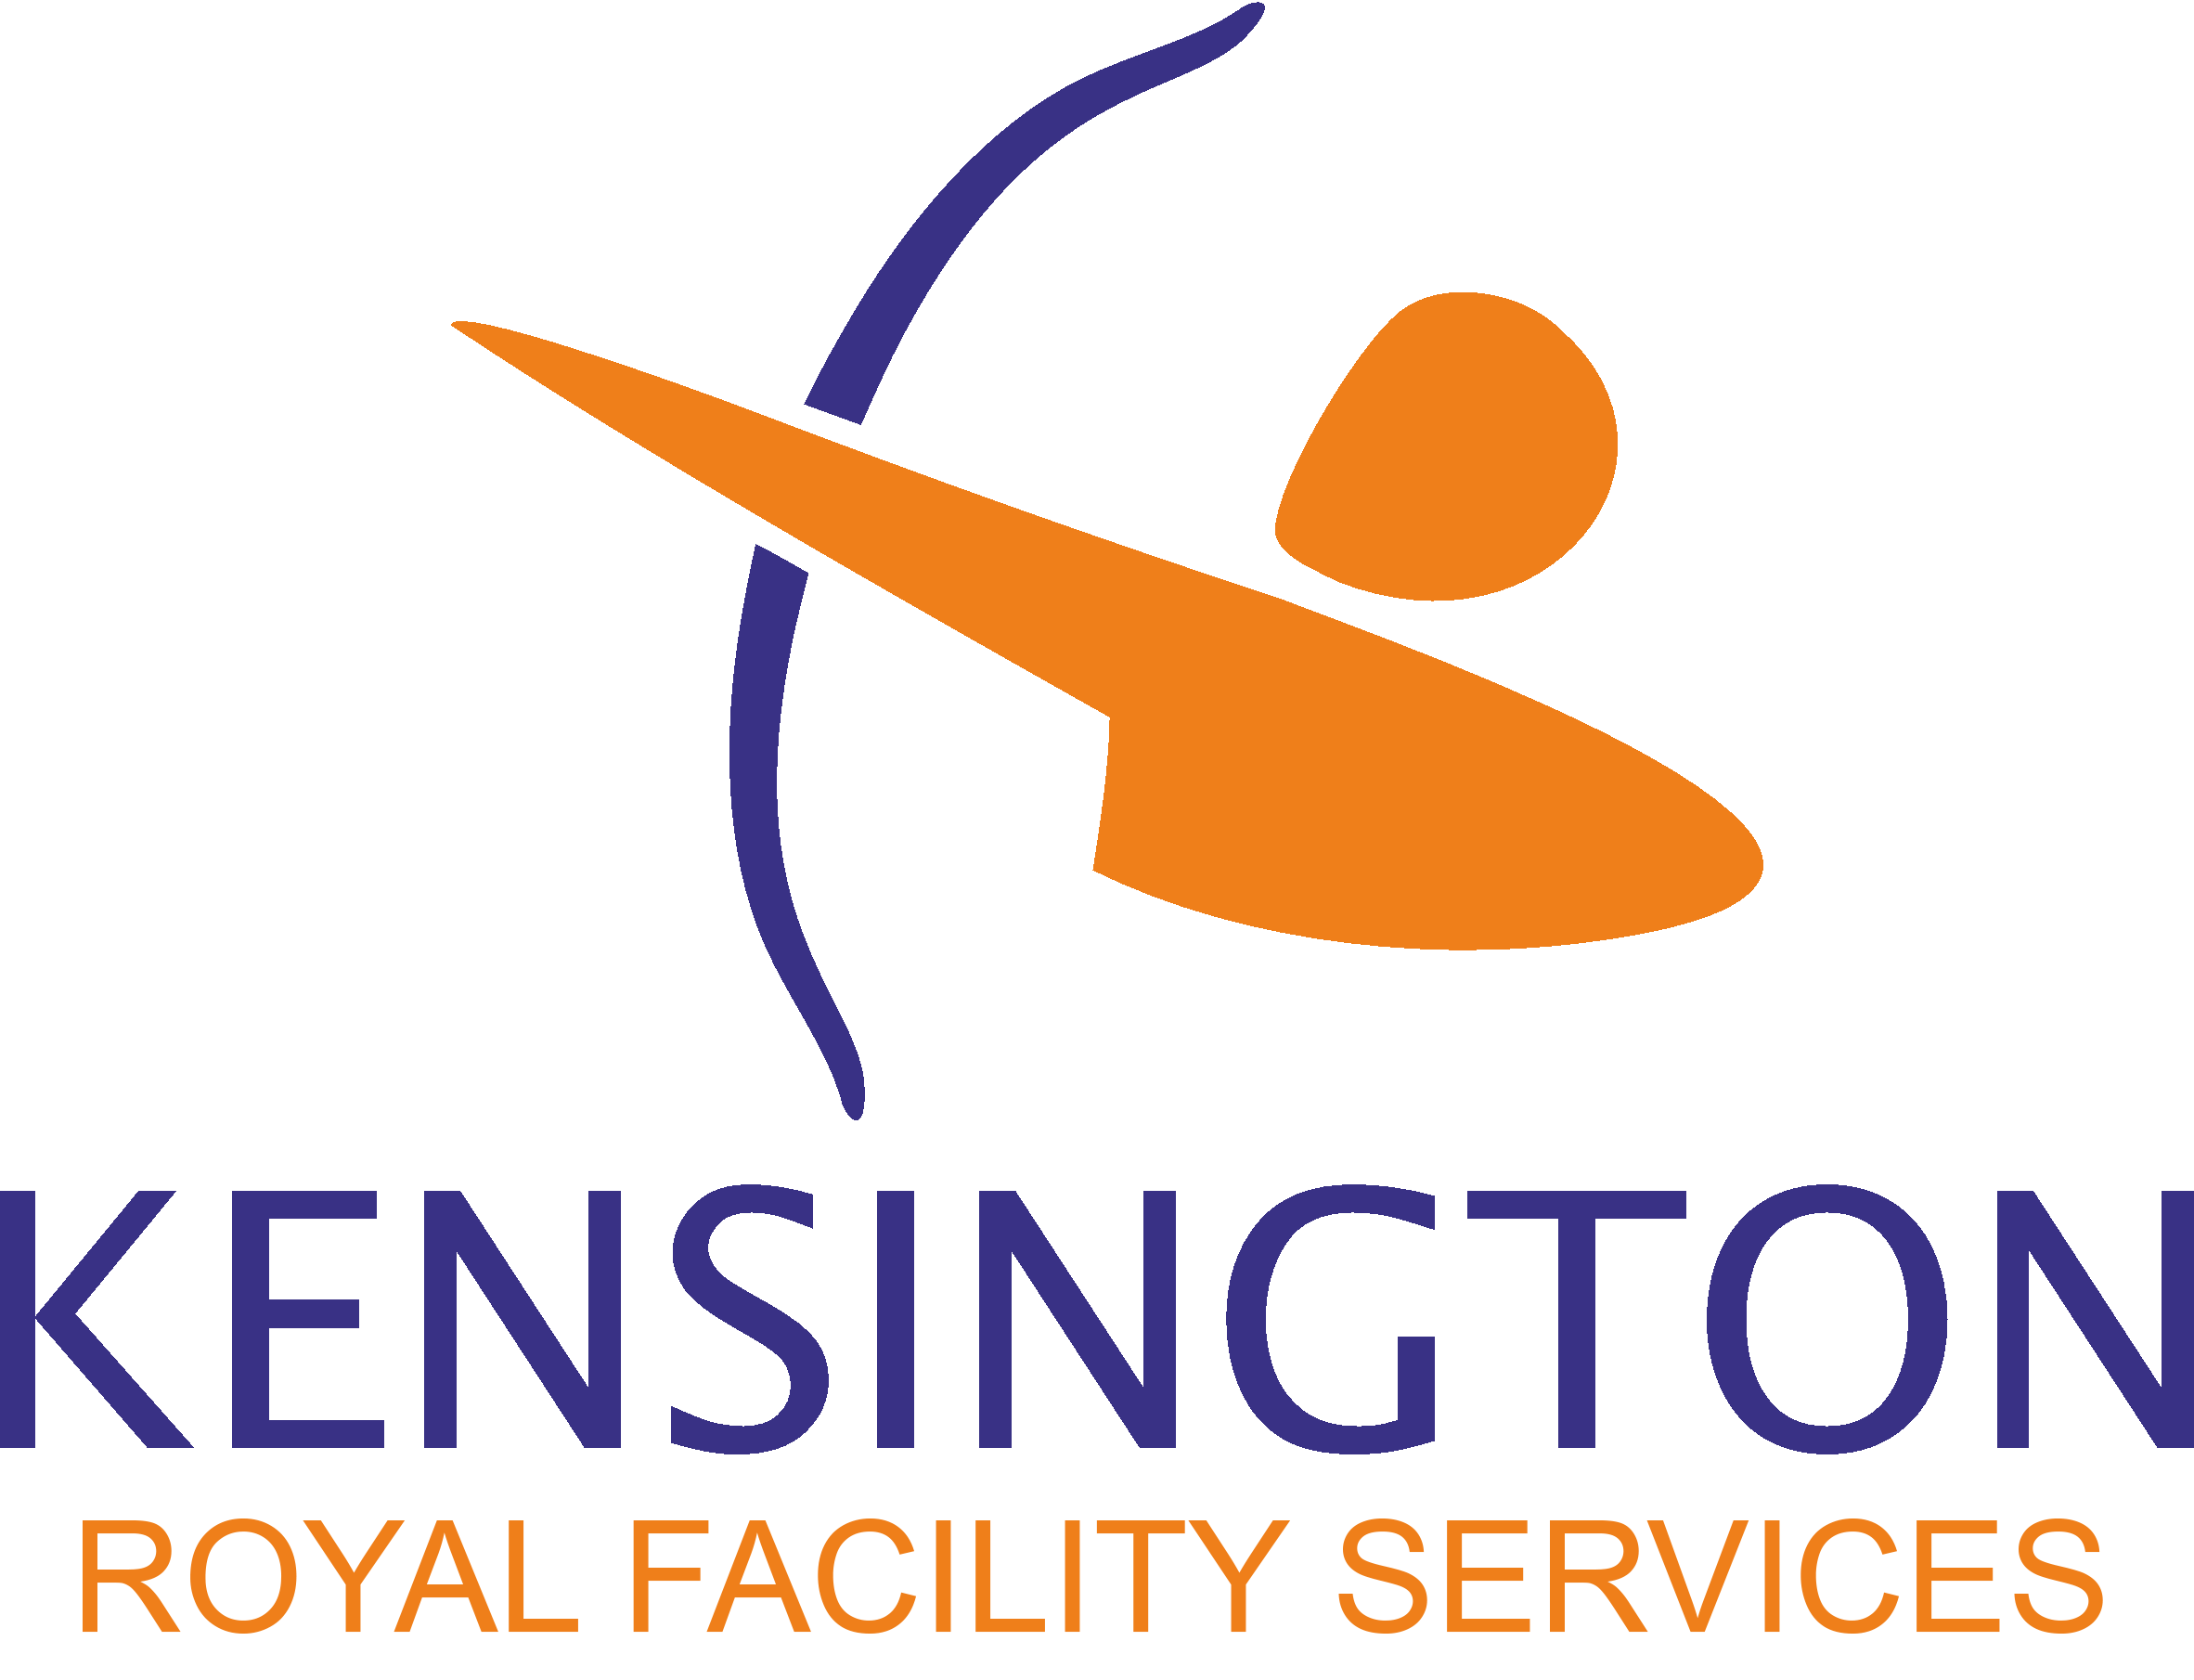 Kensington Royal Facility Services